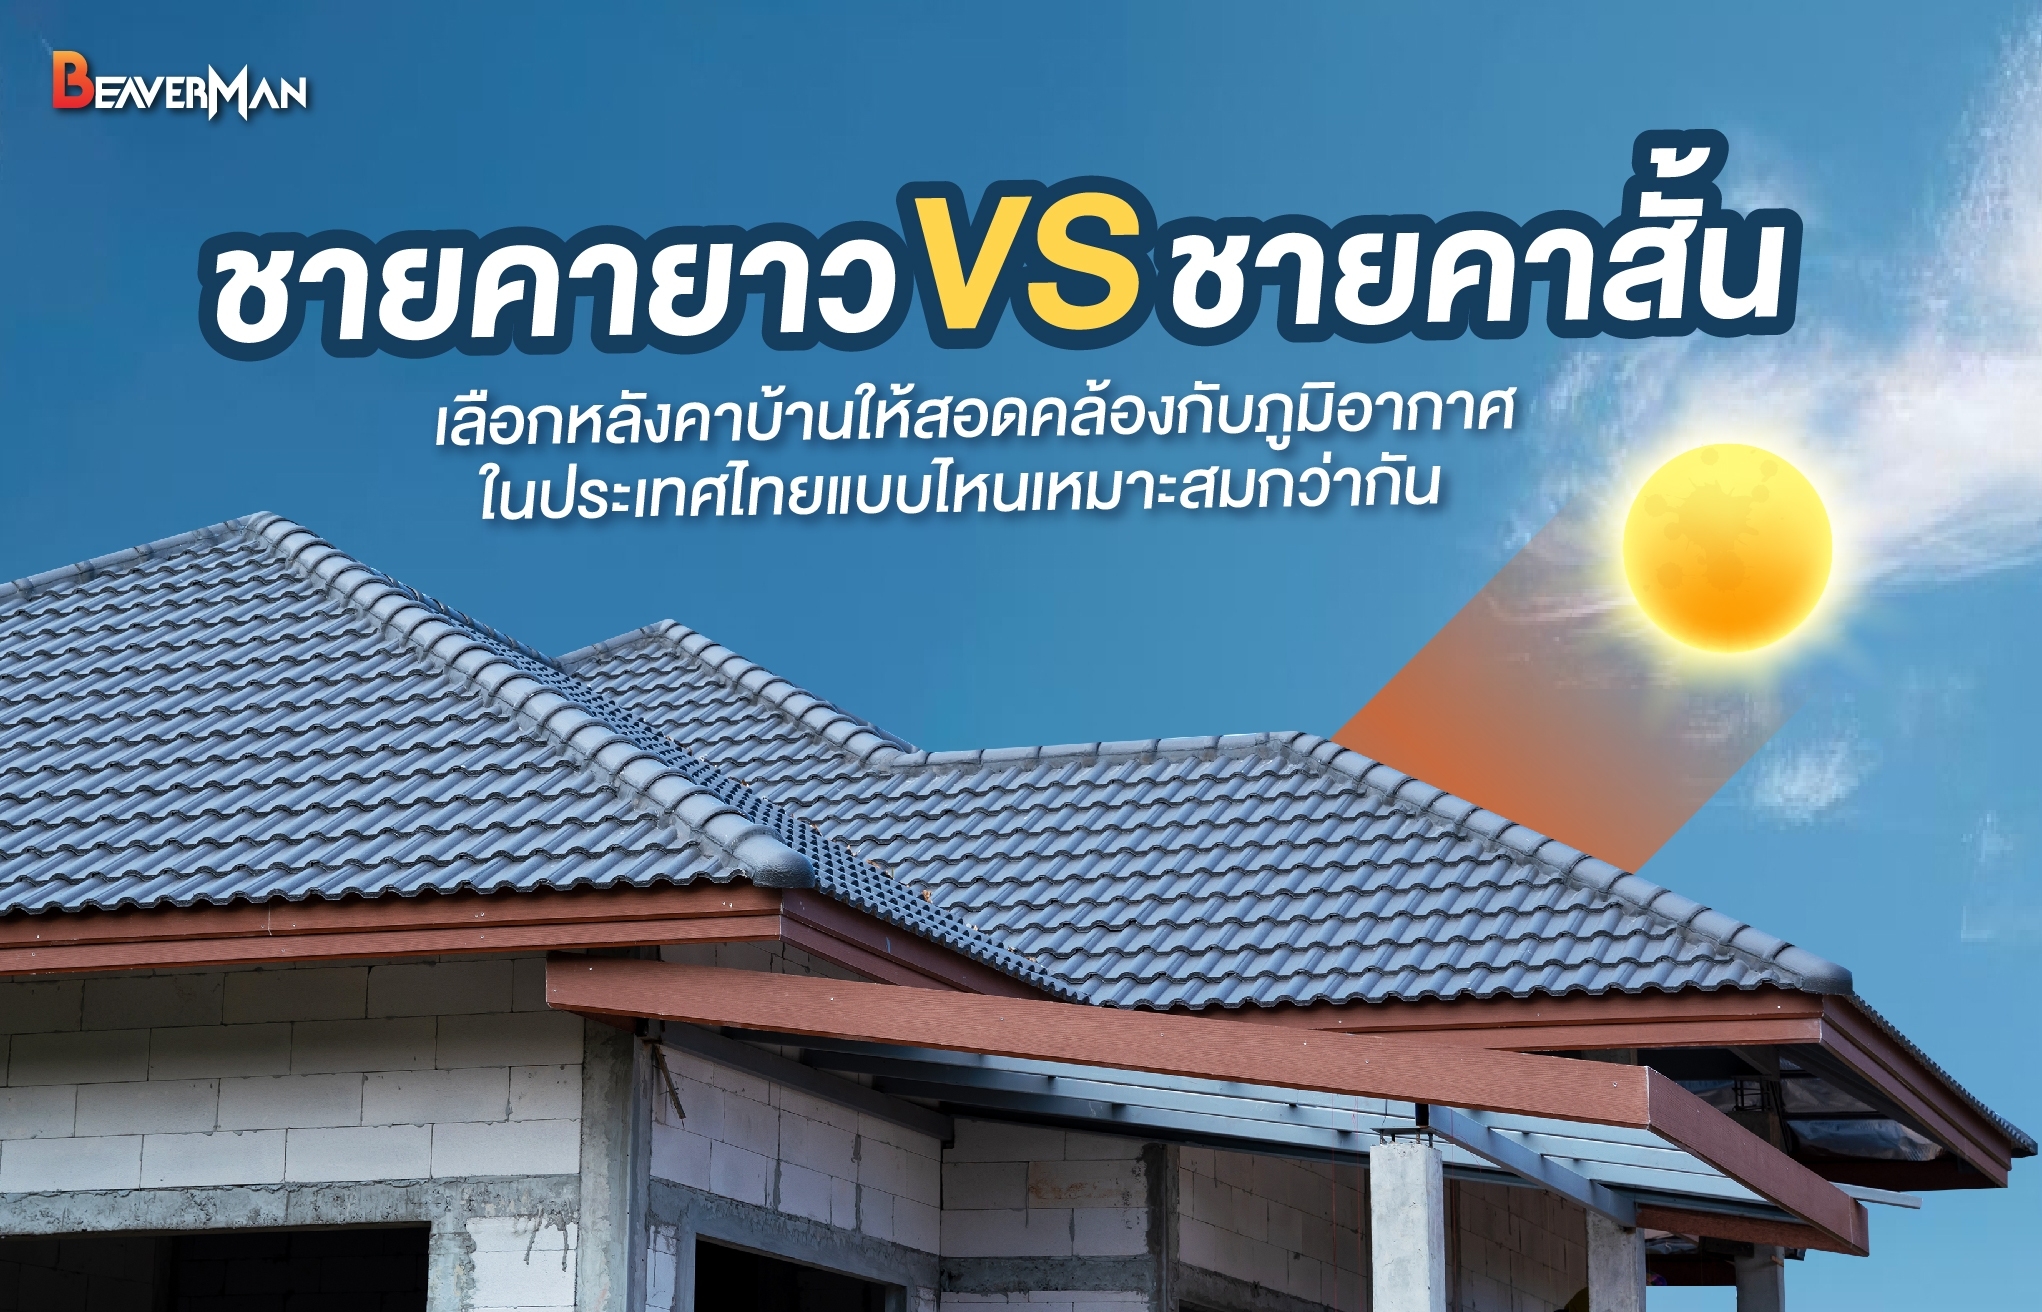 เลือกหลังคาบ้านให้สอดคล้องกับภูมิอากาศประเทศไทย